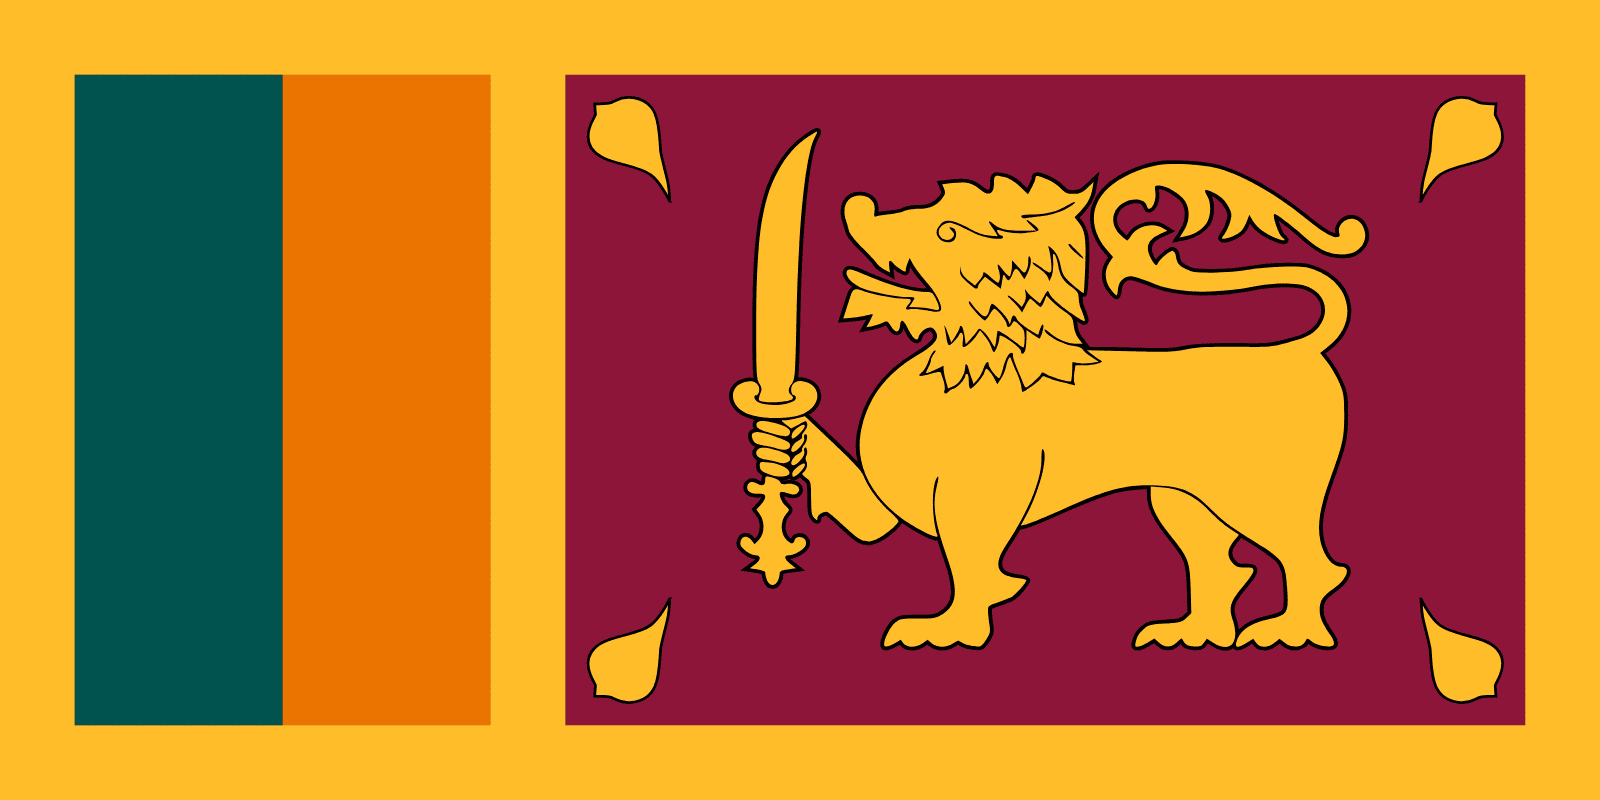 Résultat de recherche d'images pour "drapeau sri lanka"